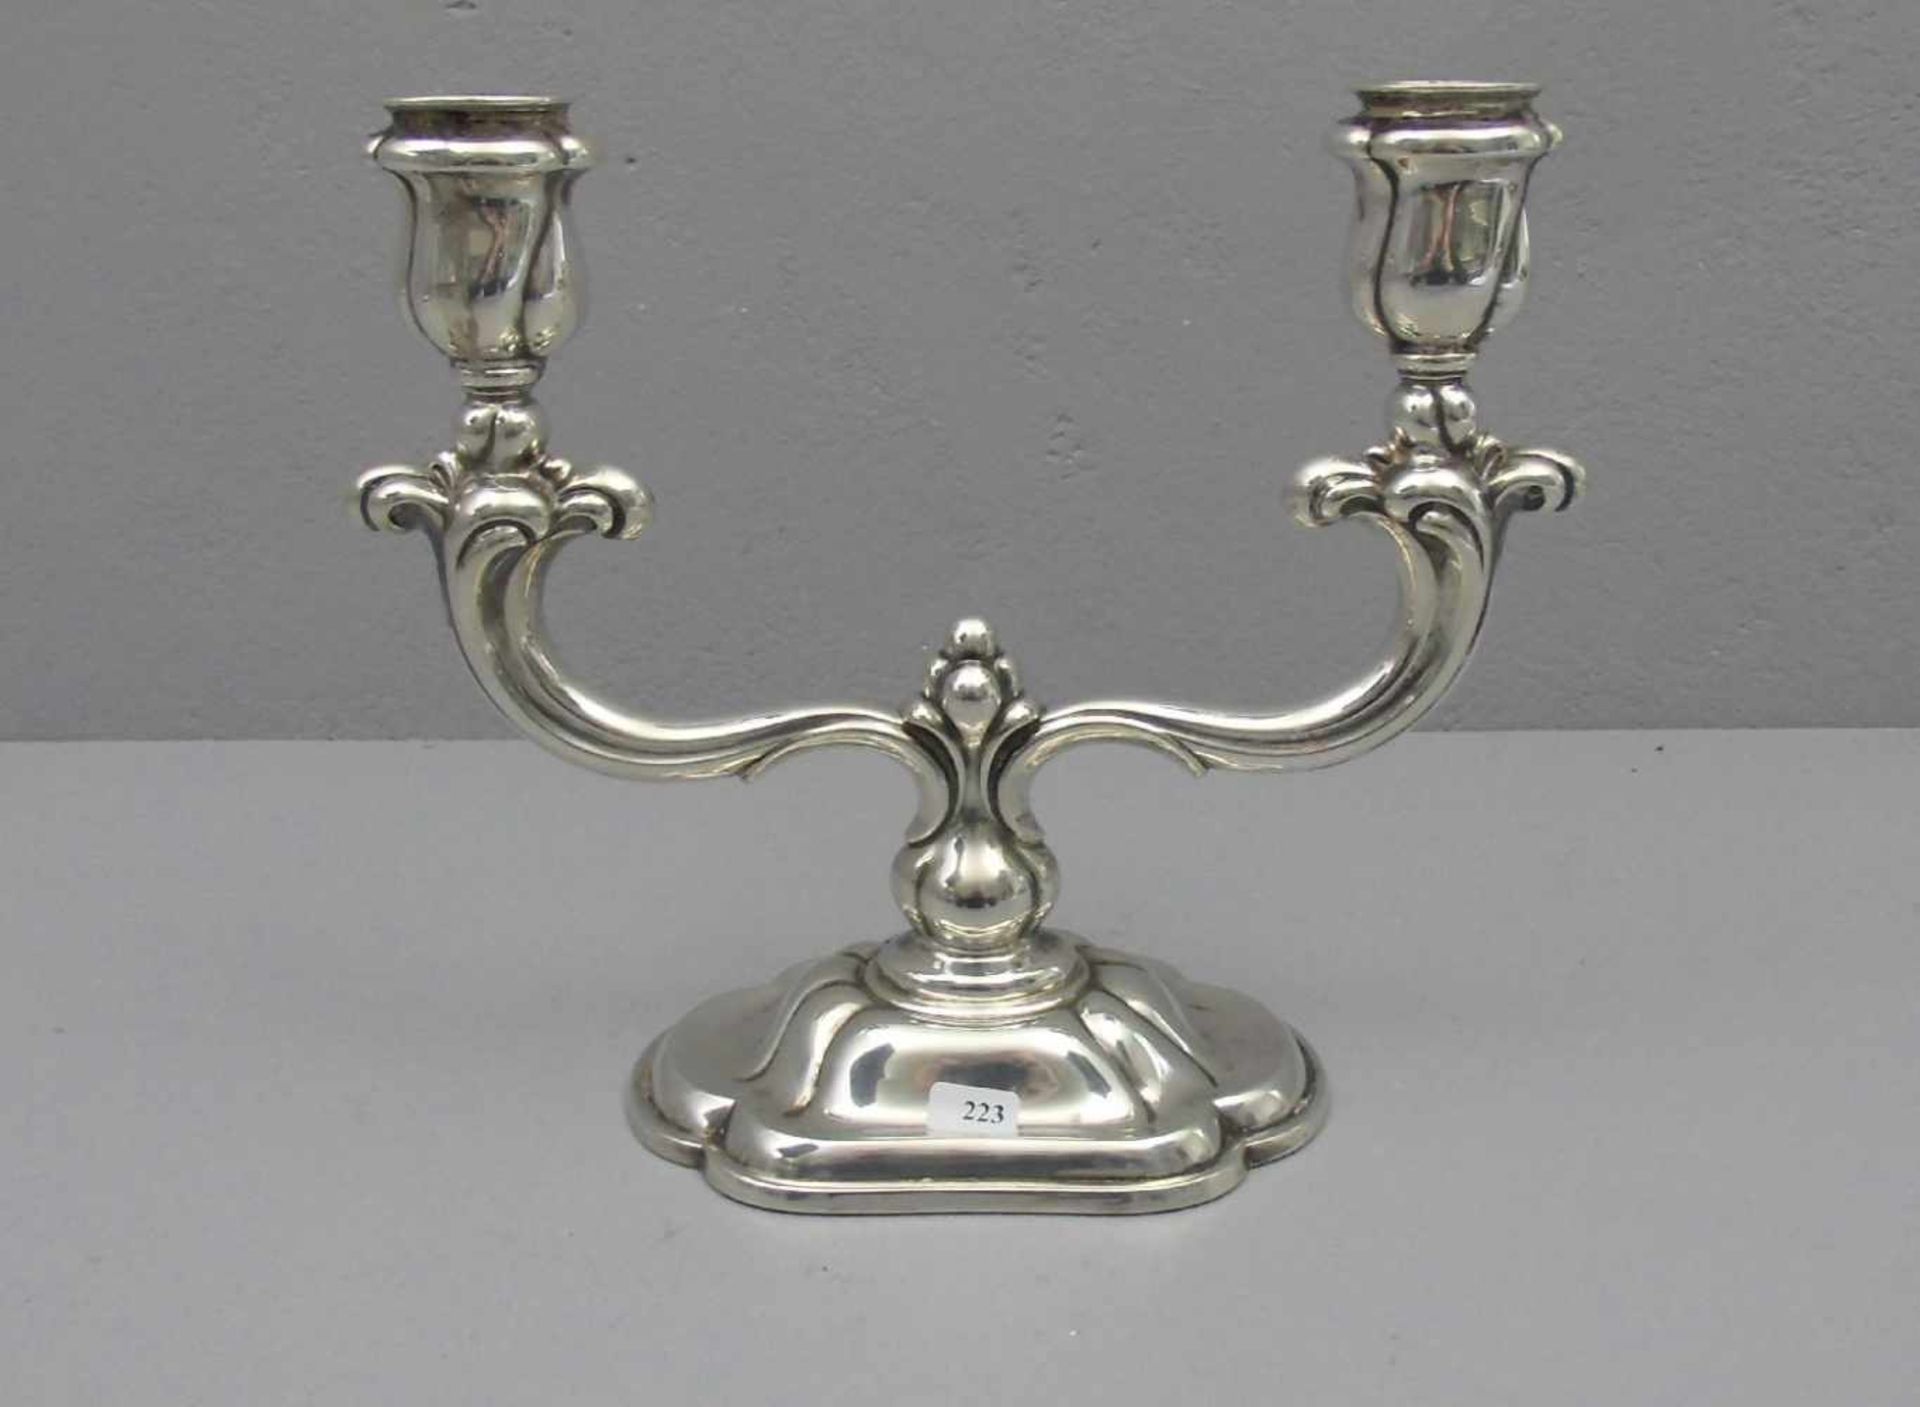 LEUCHTER / TISCHLEUCHTER / candle holder, zweiflammig, 830er Silber (mit beschwertem Fuß), gepunzt